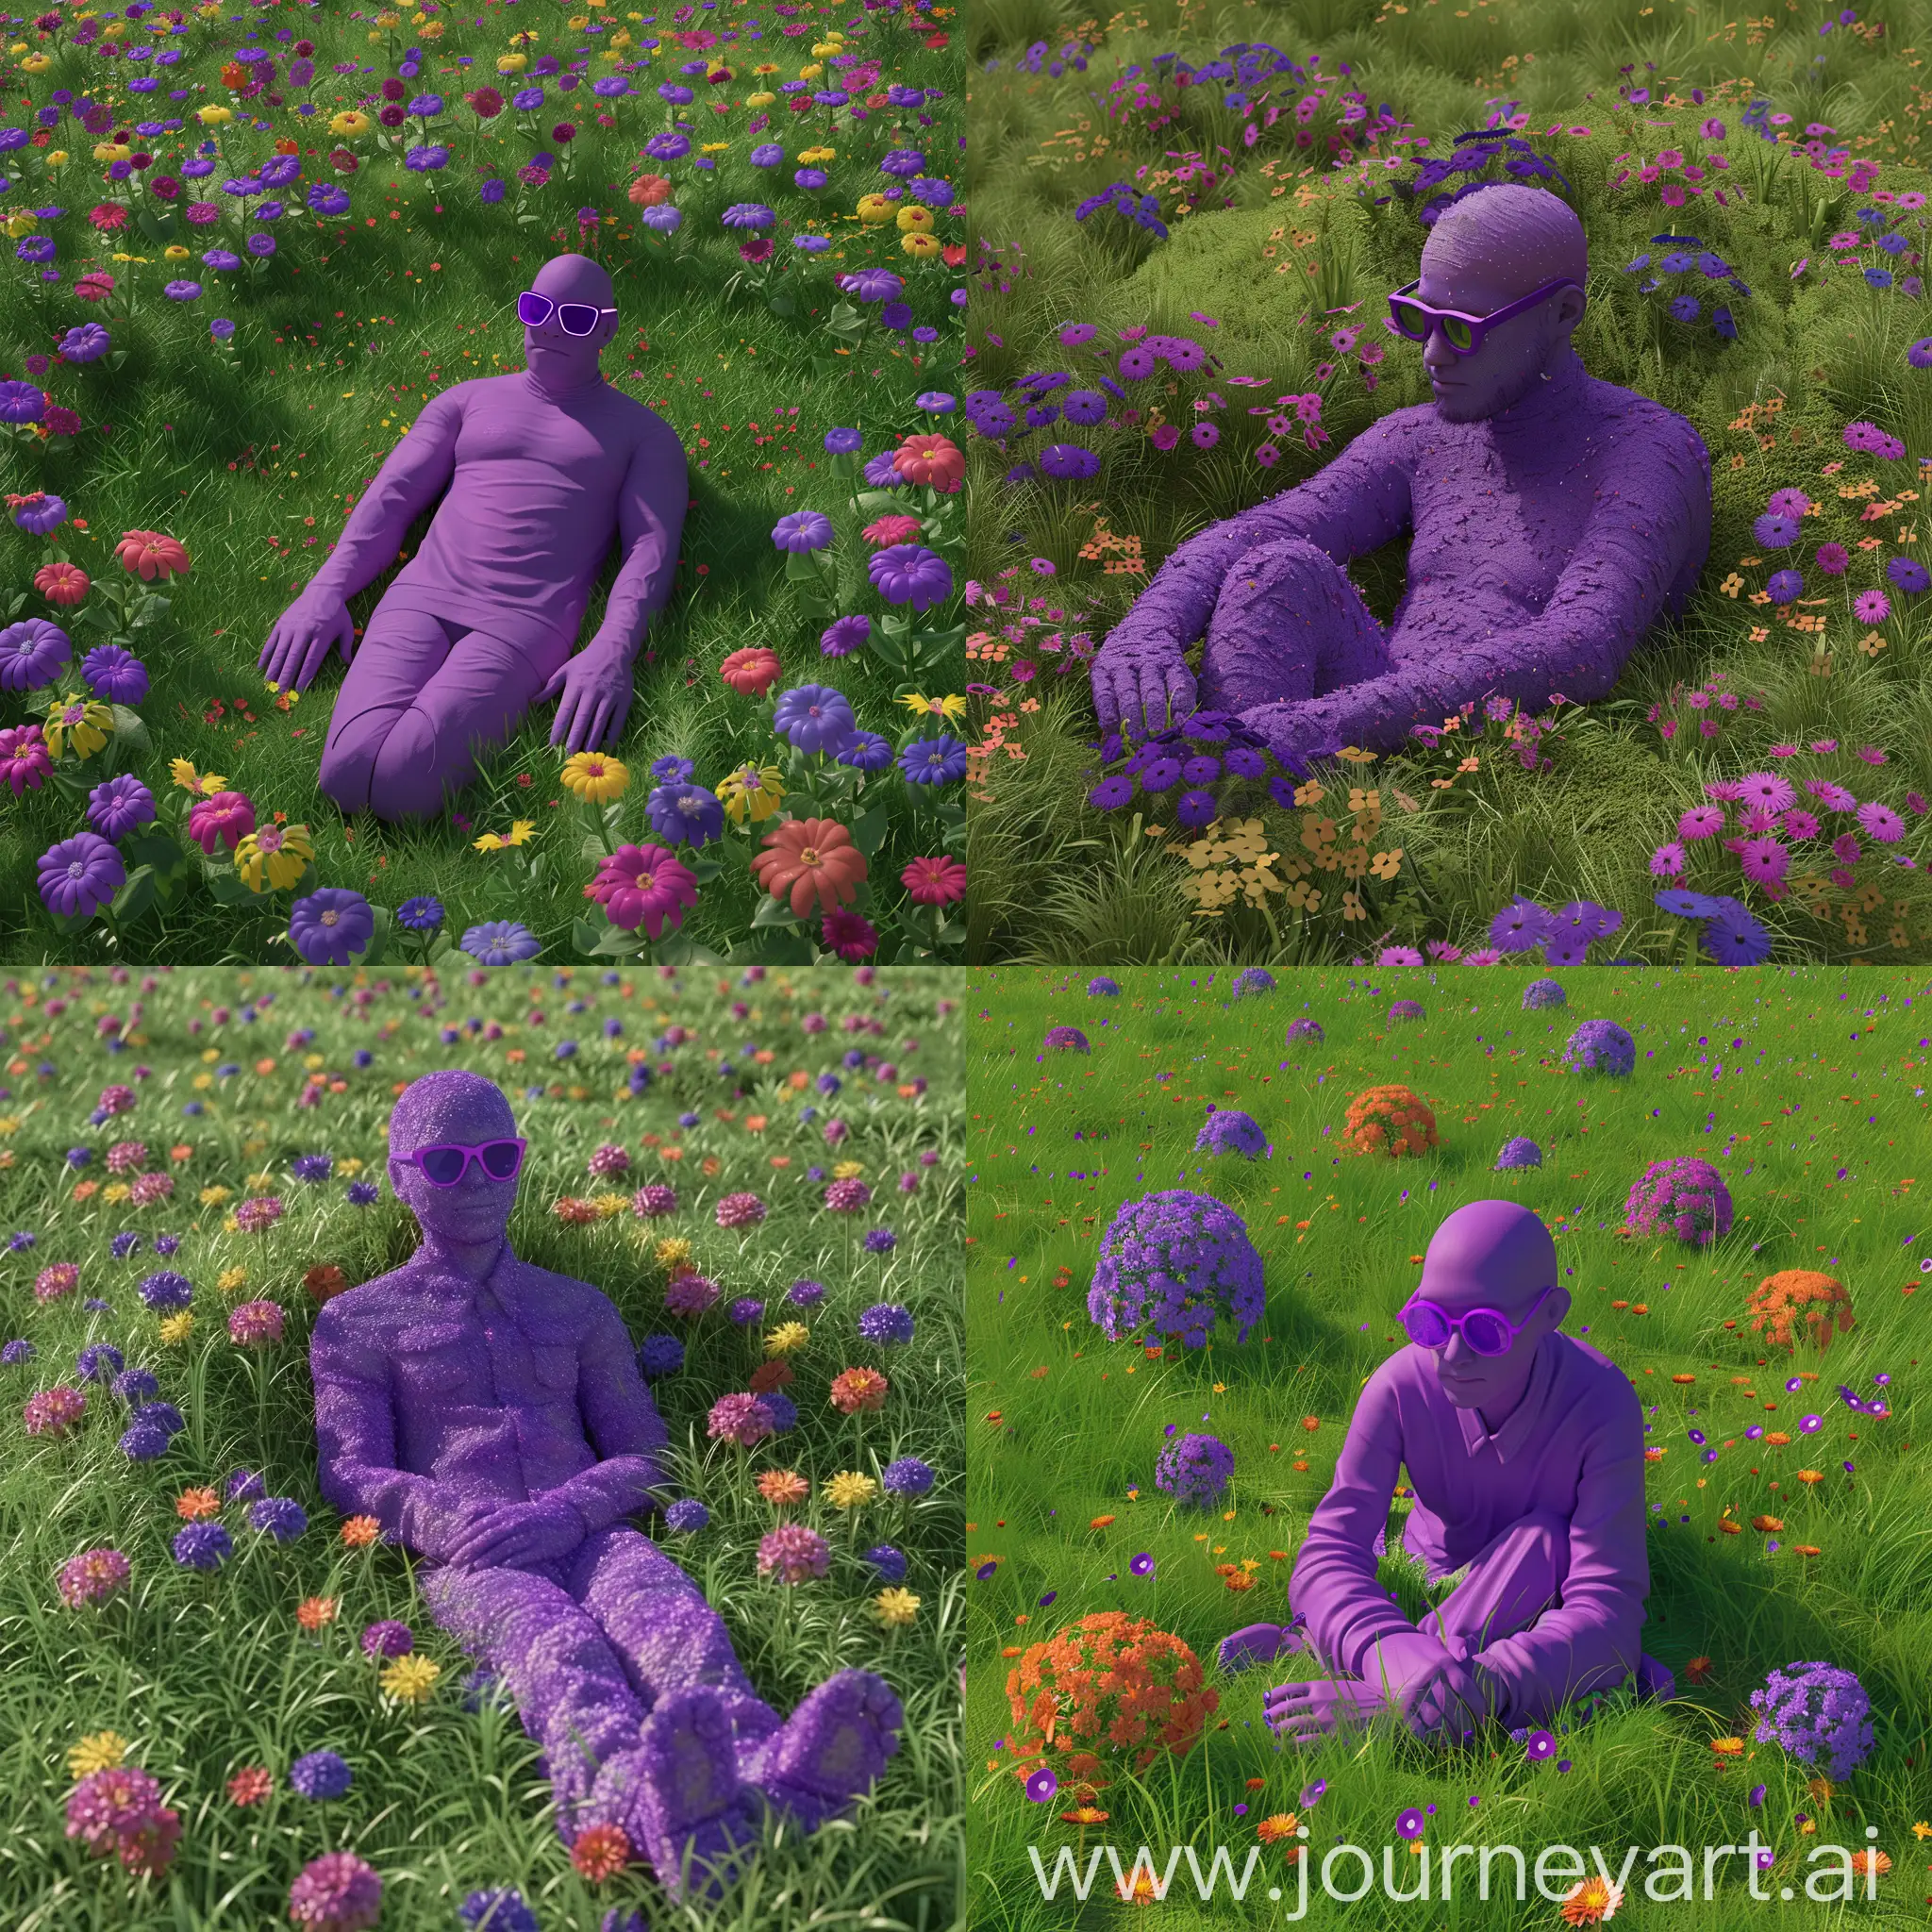 Нарисуй картинку, где изображён человек фиолетово-сиреневого цвета в фиолетовых очках, который сидит в поле. Вокруг человека трава зелёного цвета а также разноцветные цветы. У человека серьезное лицо. Человек естественной формы. Картинка в 3D Человек лежит на траве. Руки сложил под головой. Видно всего человека